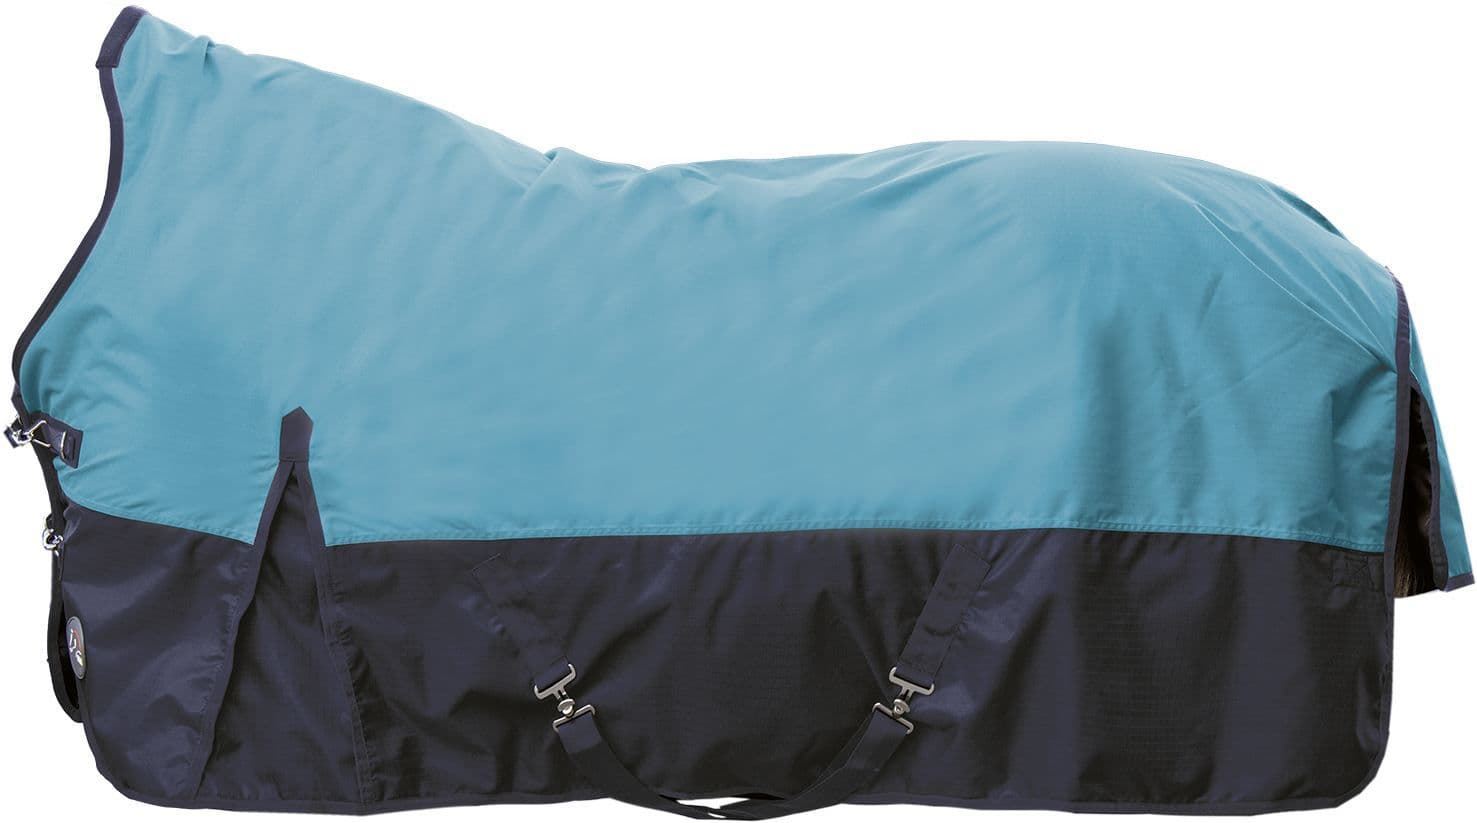 Manta HKM Winnipeg impermeable cuello alto color petróleo/azul marino 200 gr de relleno - Imagen 1